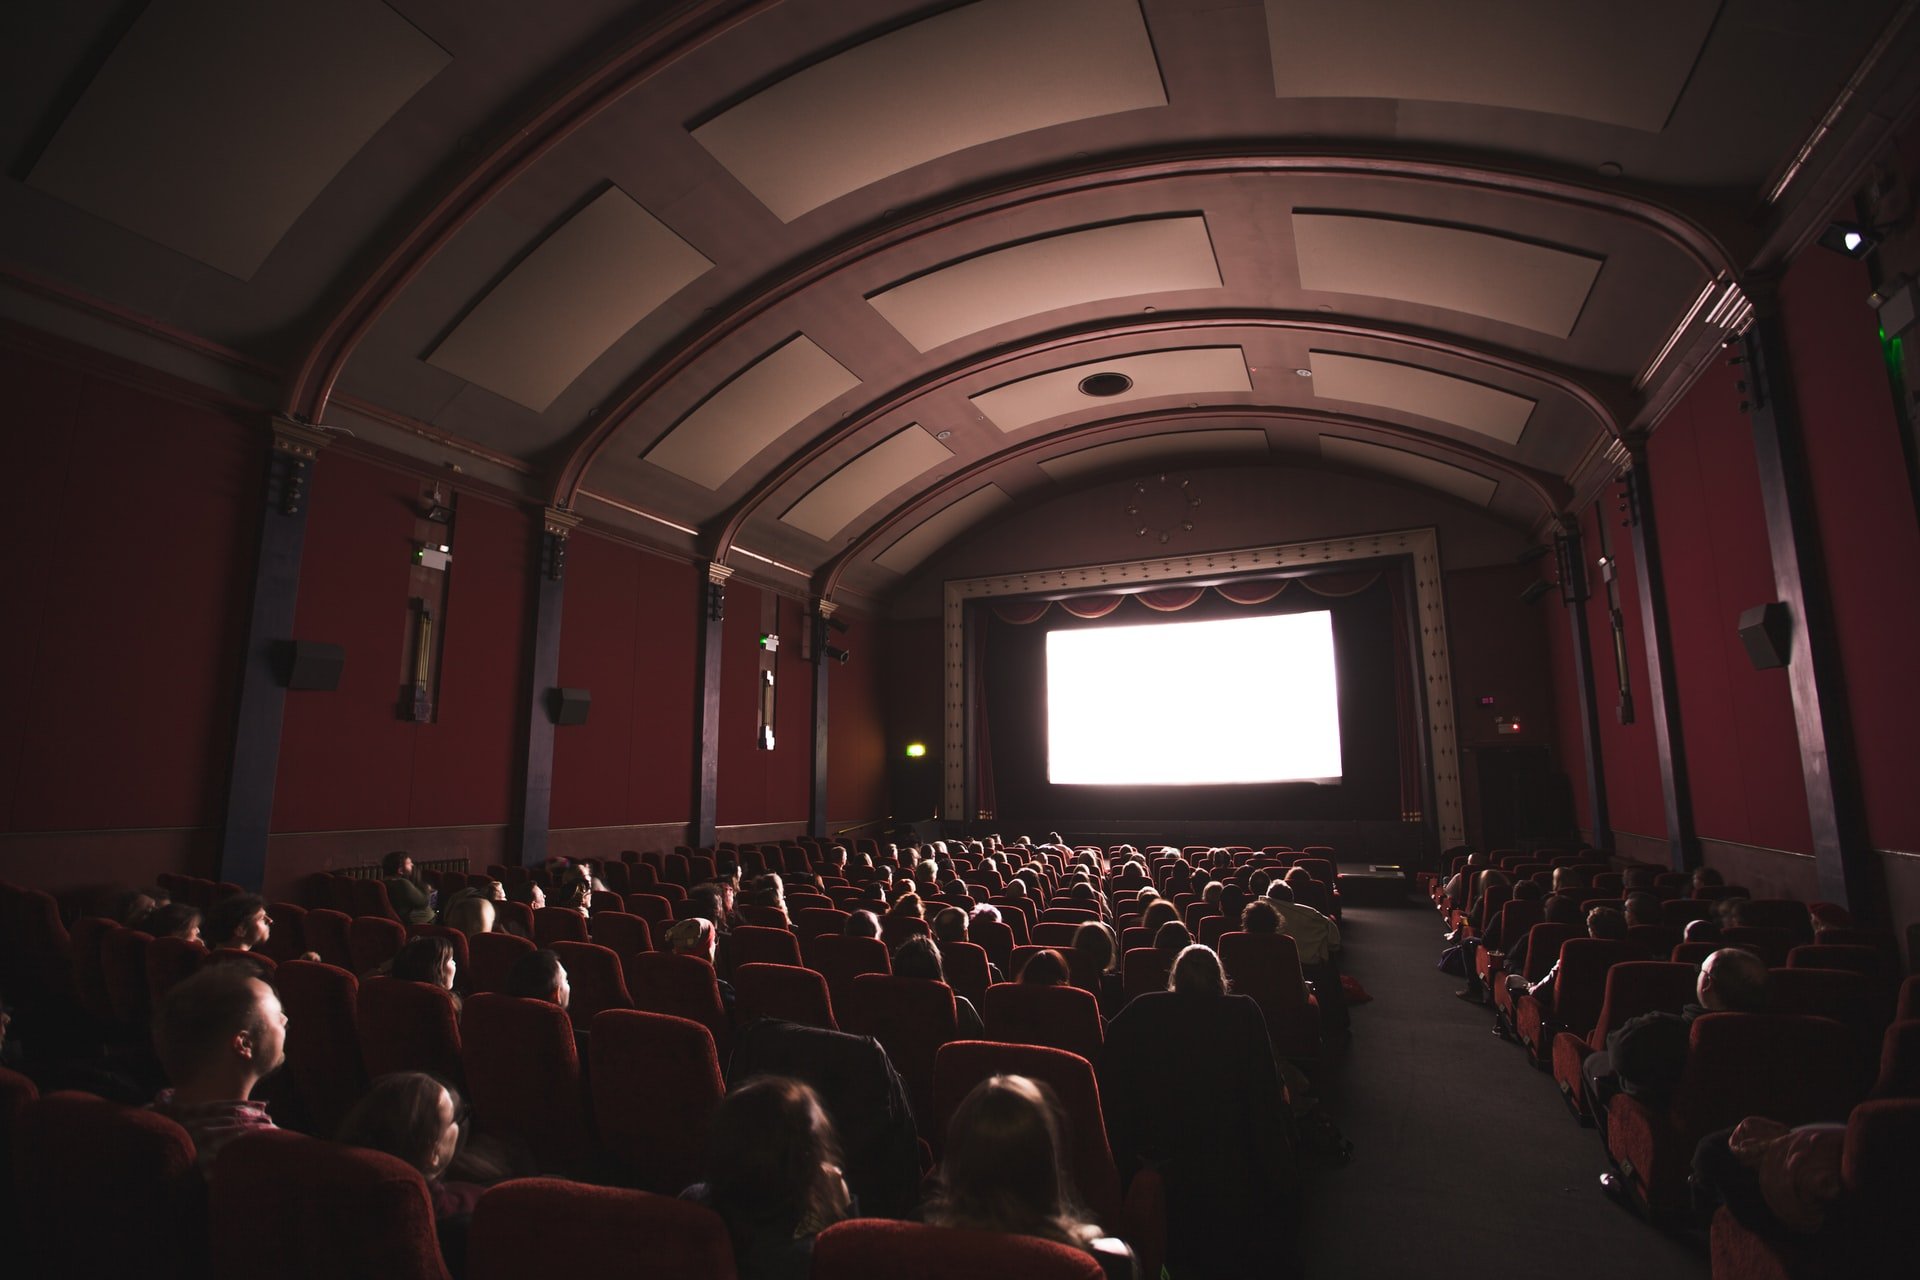 

В 4 районах Удмуртии могут модернизировать кинозалы по государственной программе

